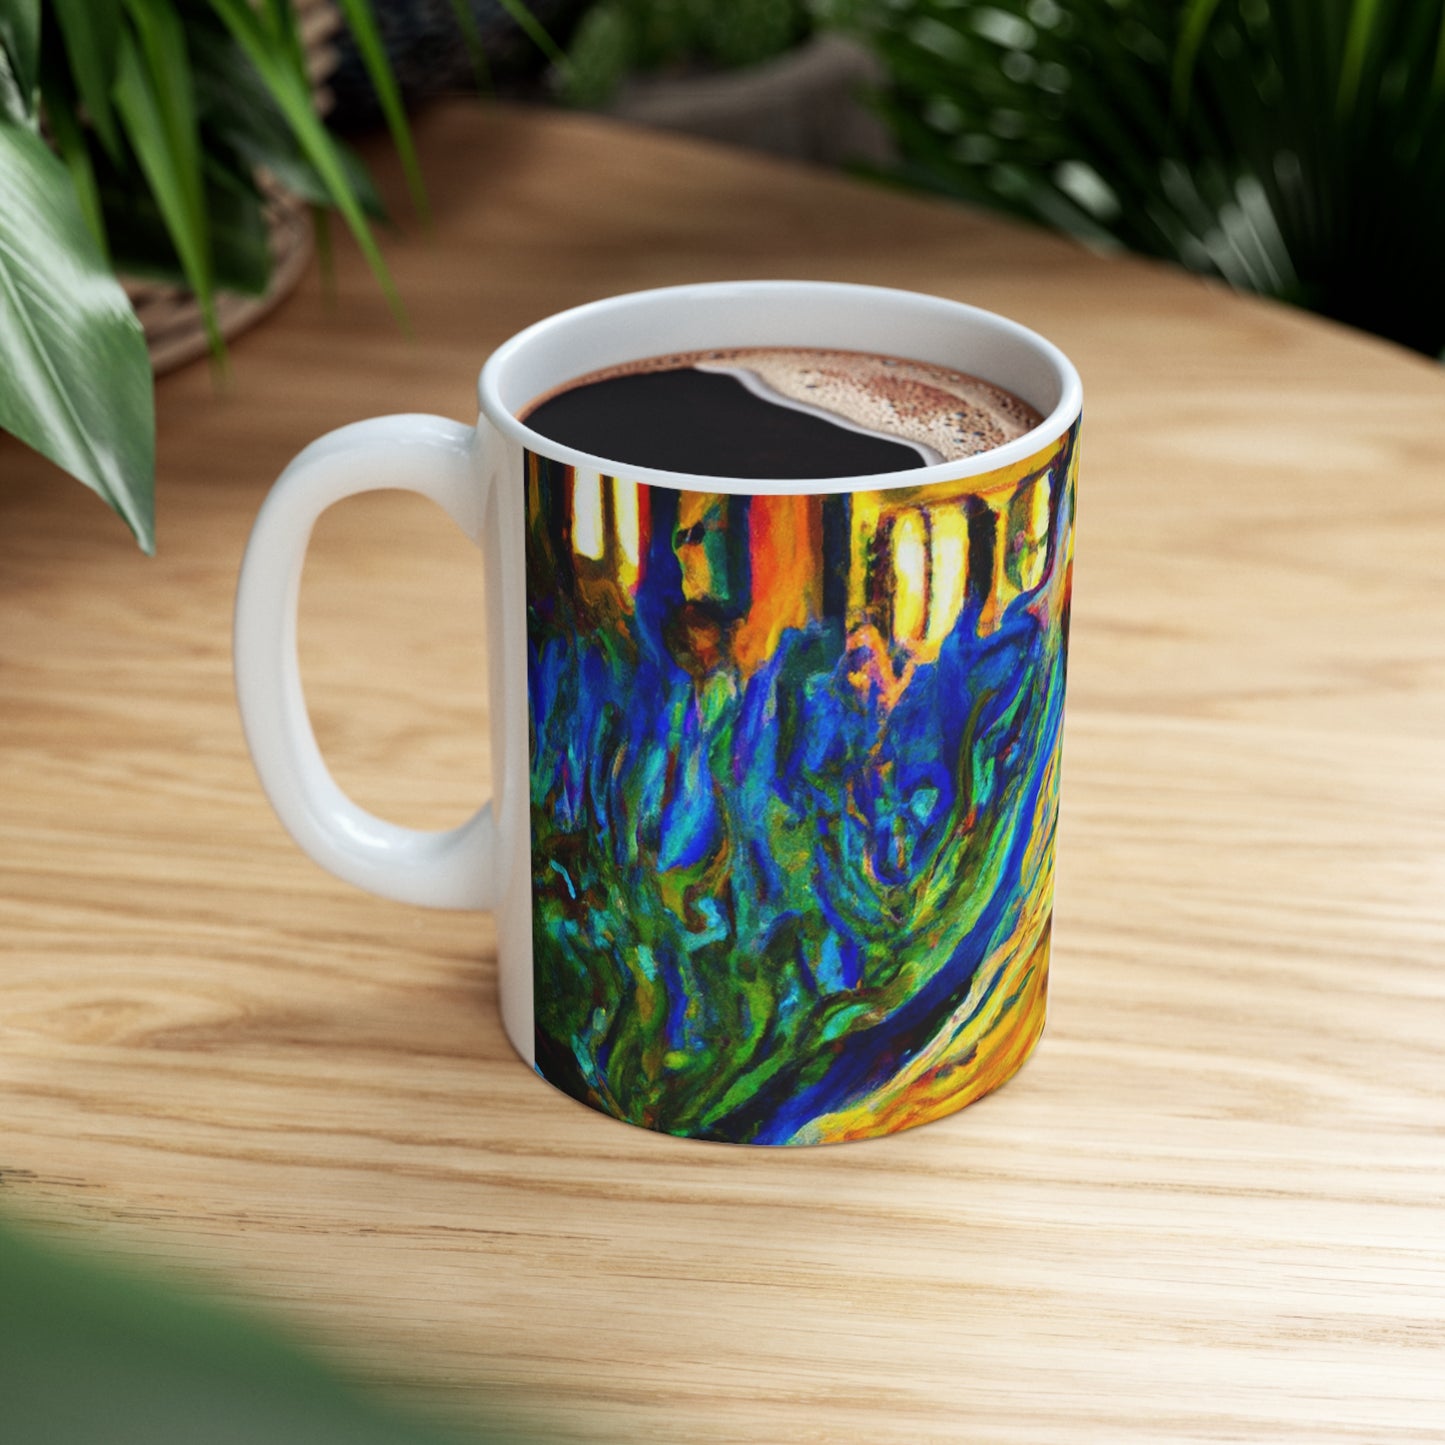 "A Cat Amongst the Celestial Tea Leaves" - The Alien Ceramic Mug 11 oz